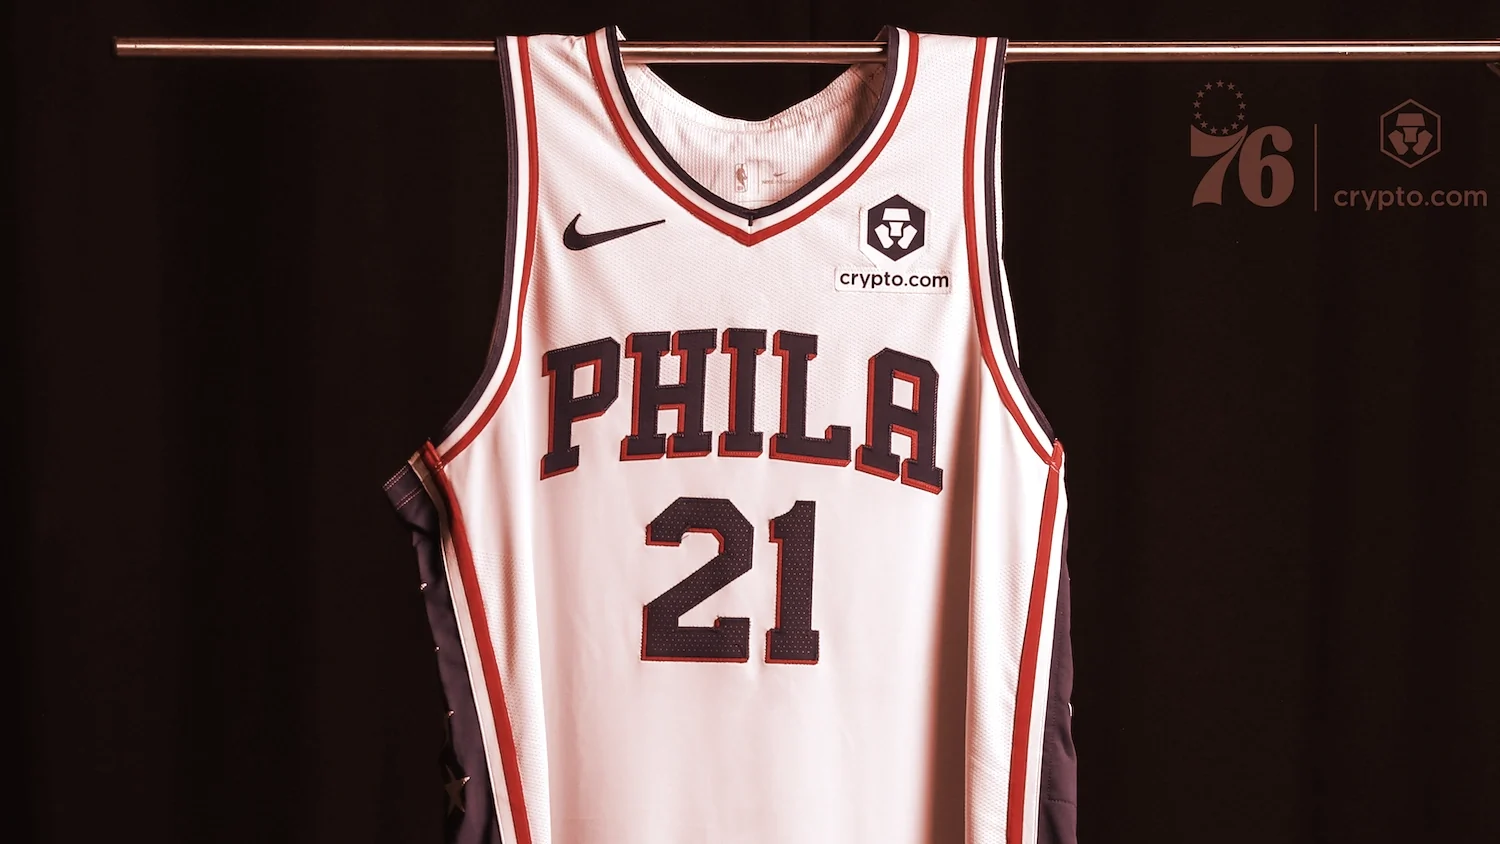 The Philadelphia 76ers are now sponsored by crypto exchange Crypto.com Image: Crypto.com